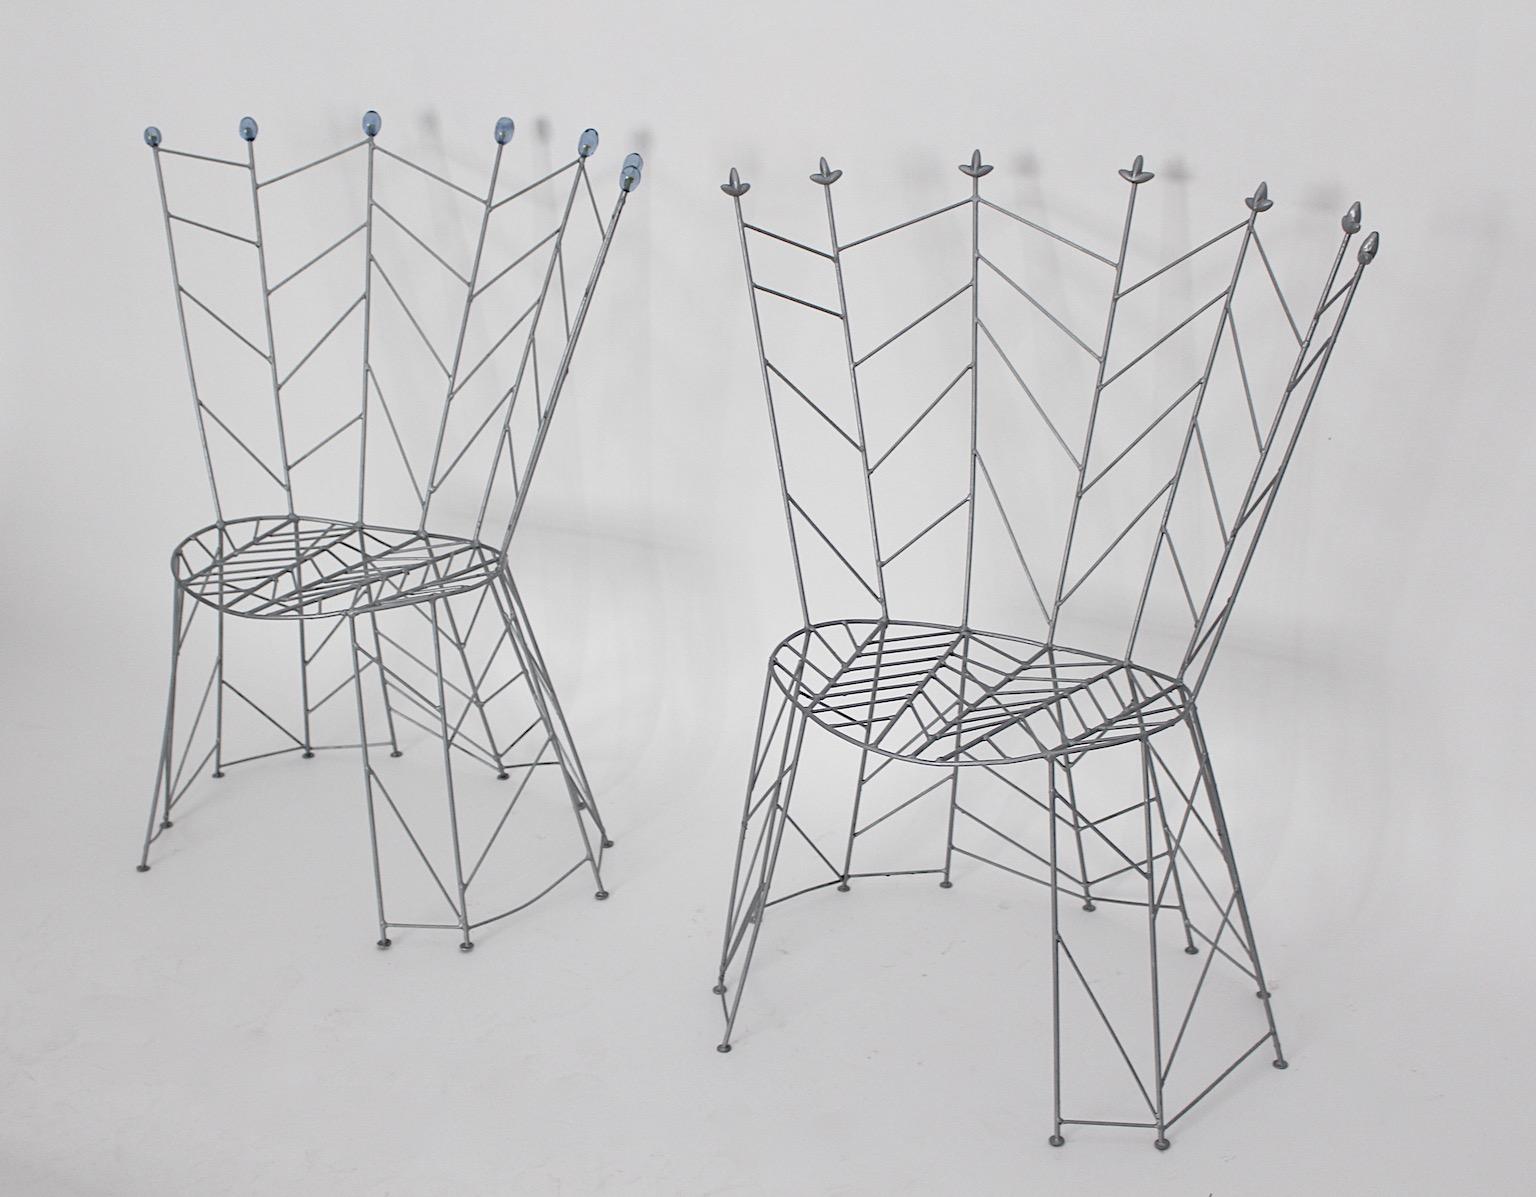 Chaises vintage sculpturales en métal modèle Pupeny ou Buds de Bohuslav Horak, 1988. 
Ces chaises d'appoint témoignent d'un design sculptural et féerique à la fois. Ce modèle nommé Pupeny (Bourgeons) conçu par Bohuslav Horak, né en 1954, ressemble à